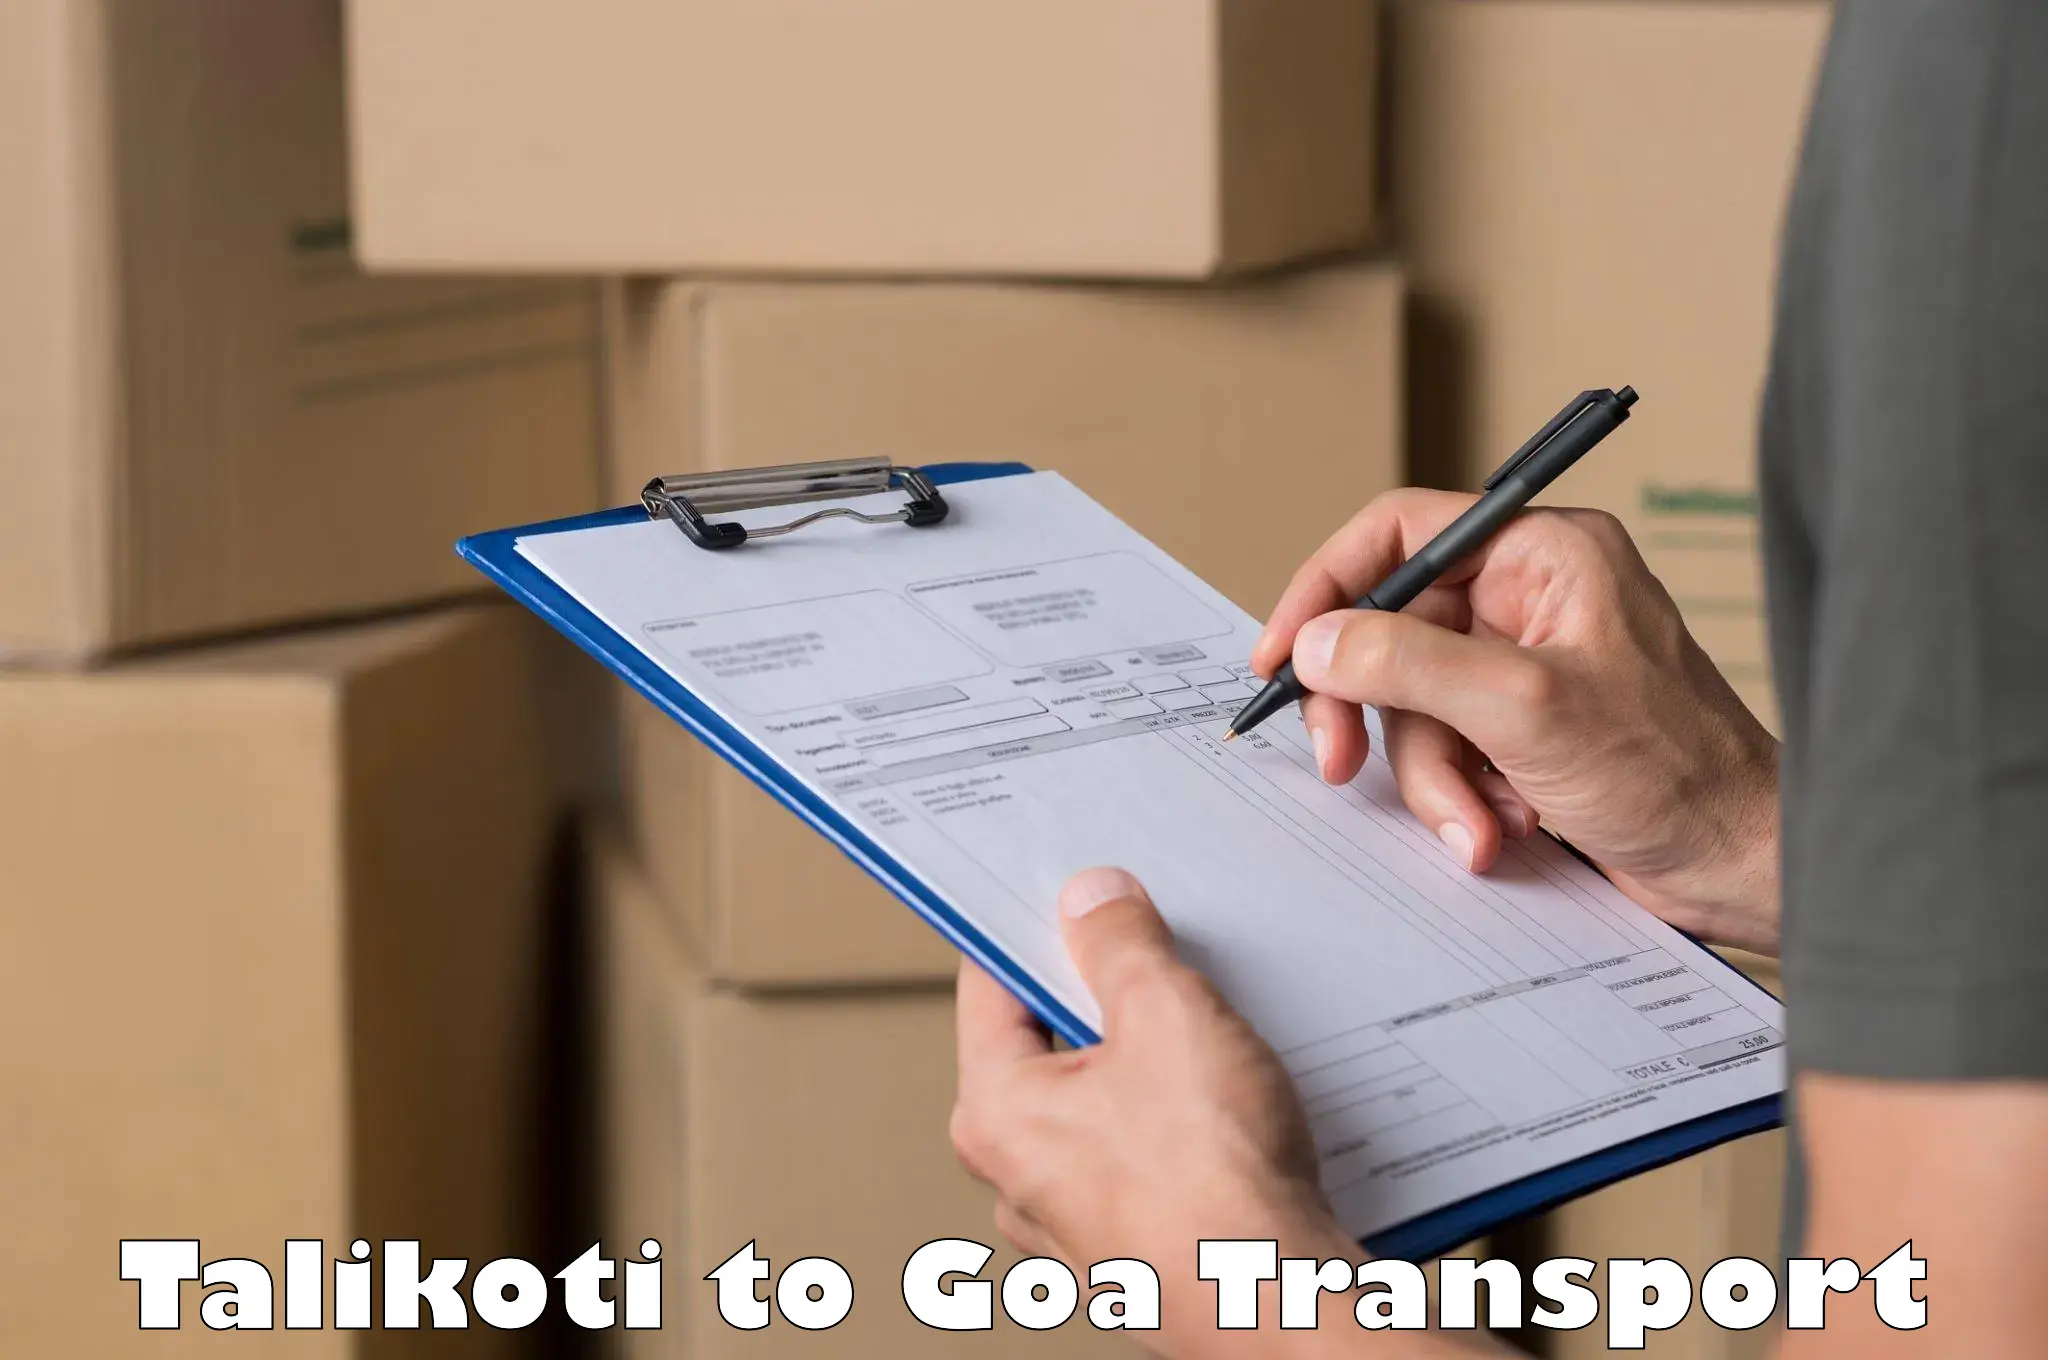 Daily transport service Talikoti to IIT Goa